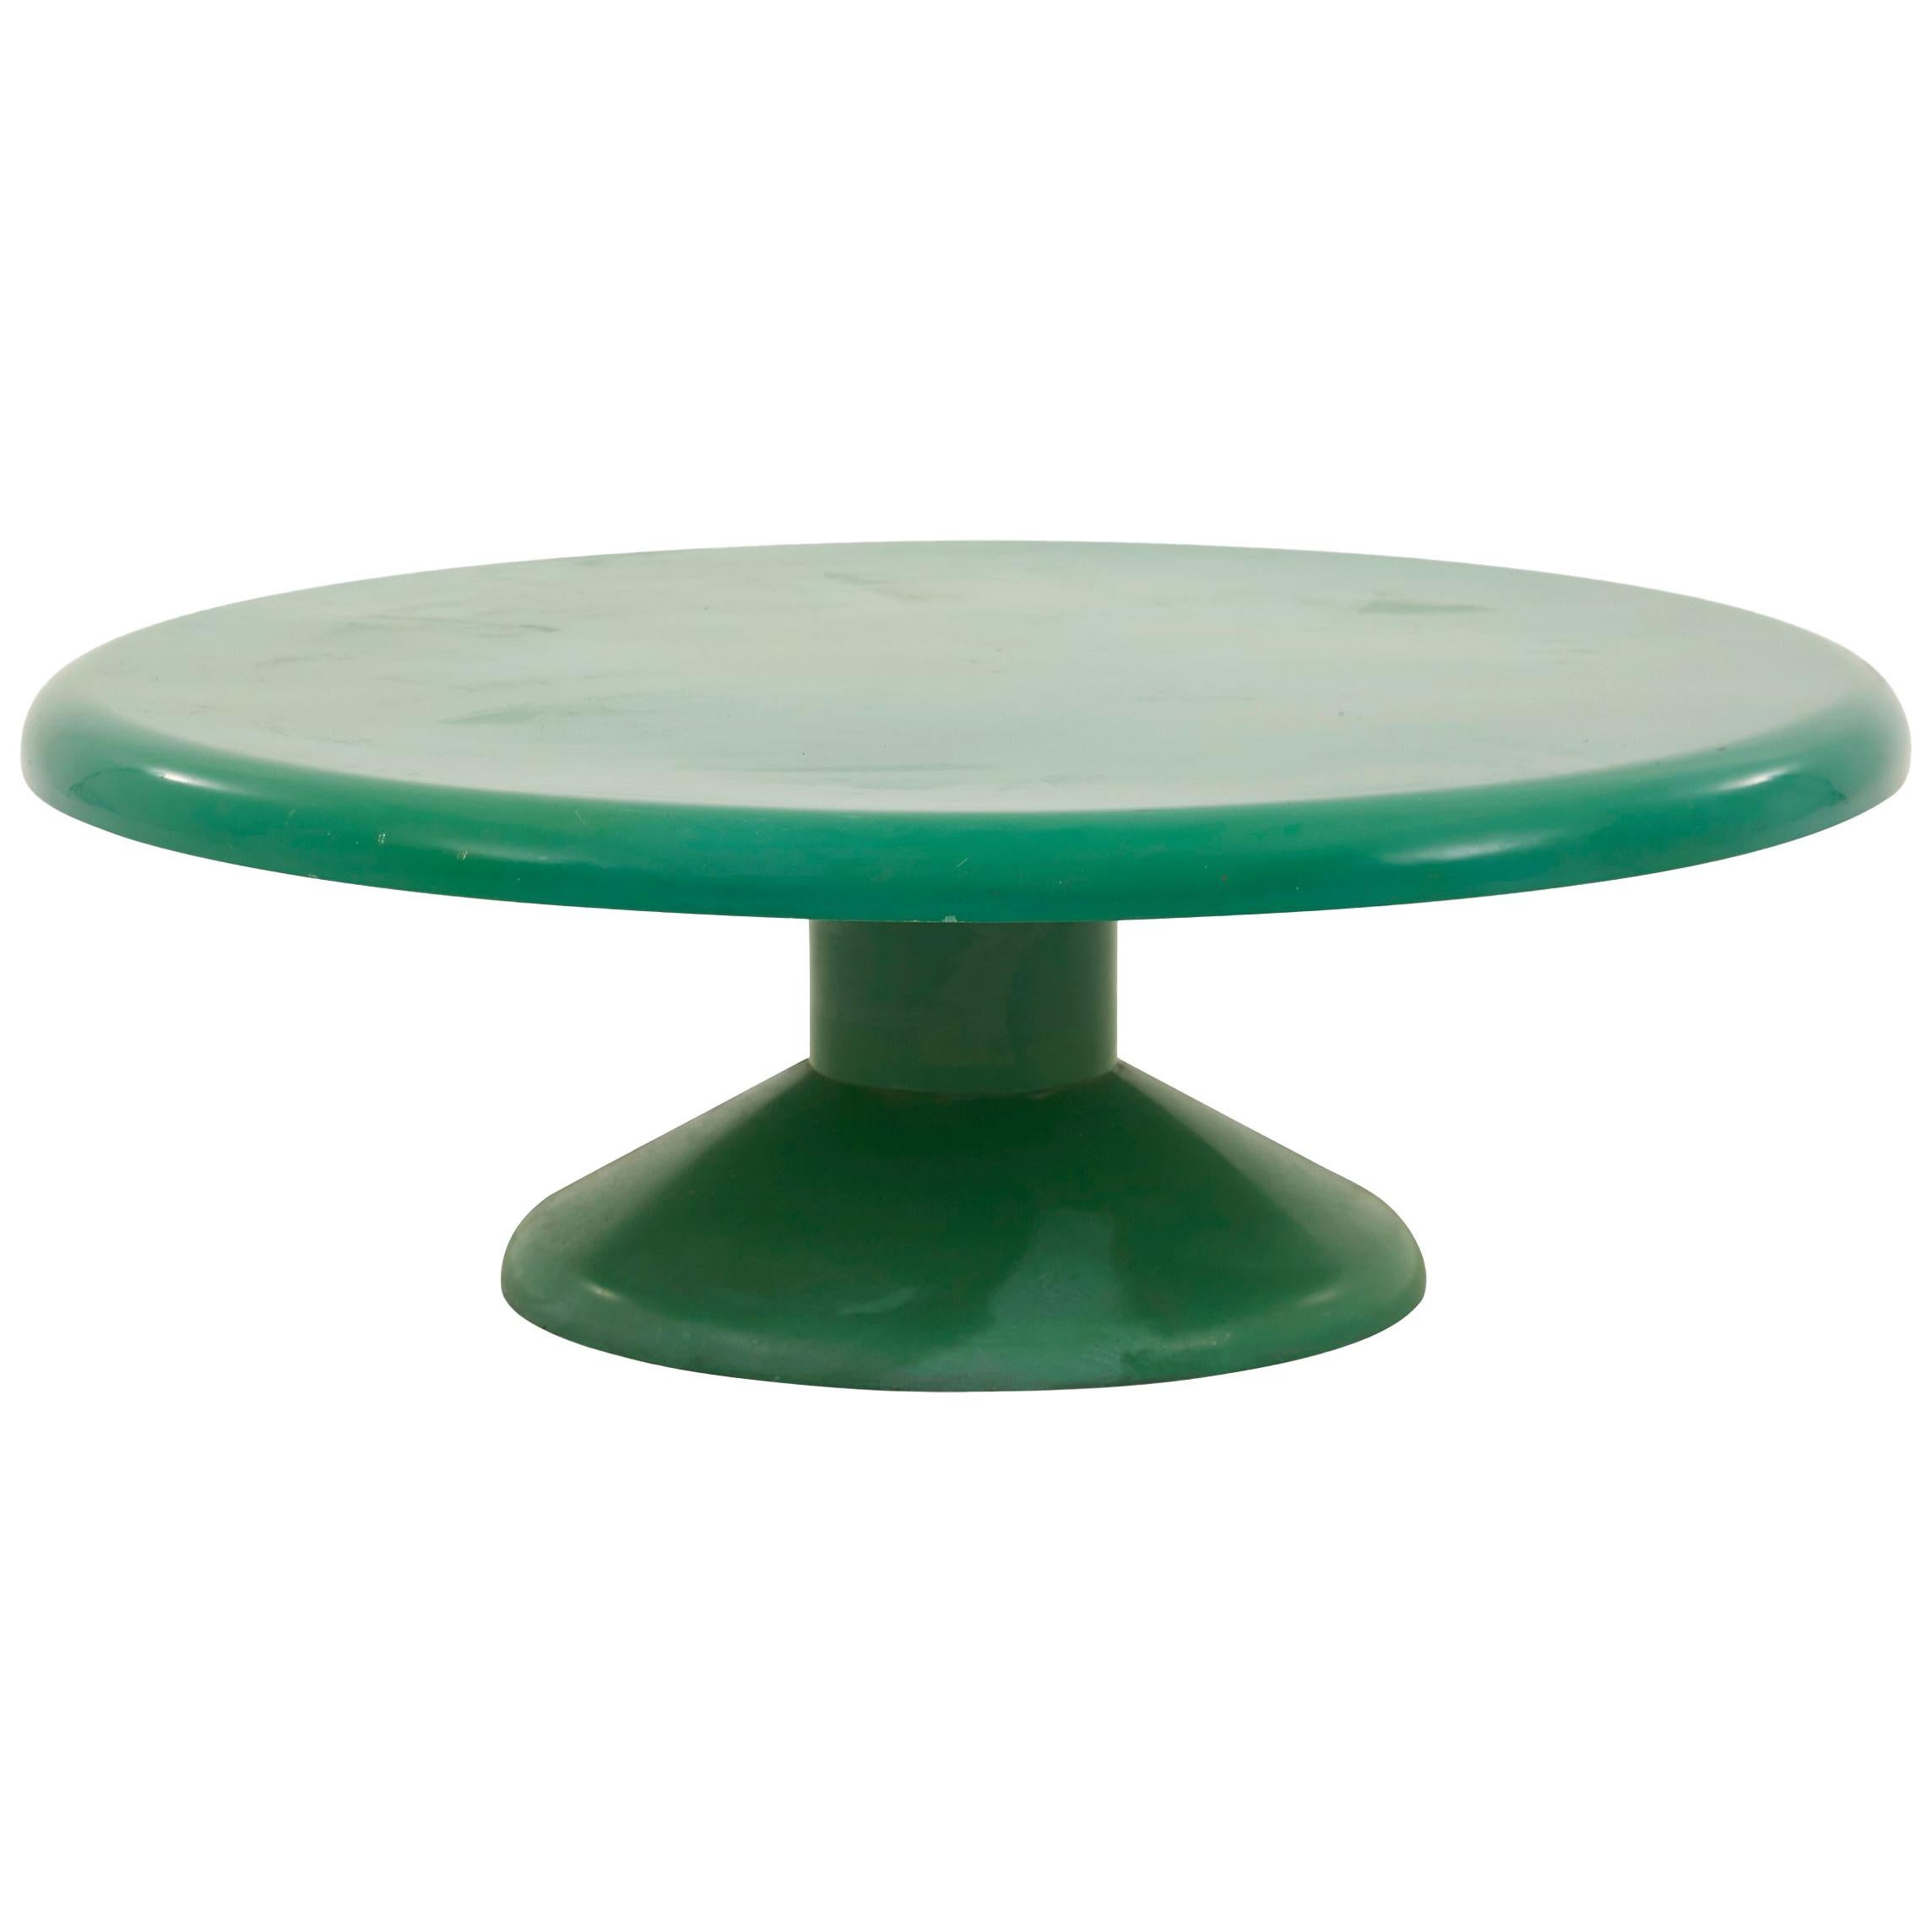 Vico Magistretti Molded Plastic Green Coffee Table